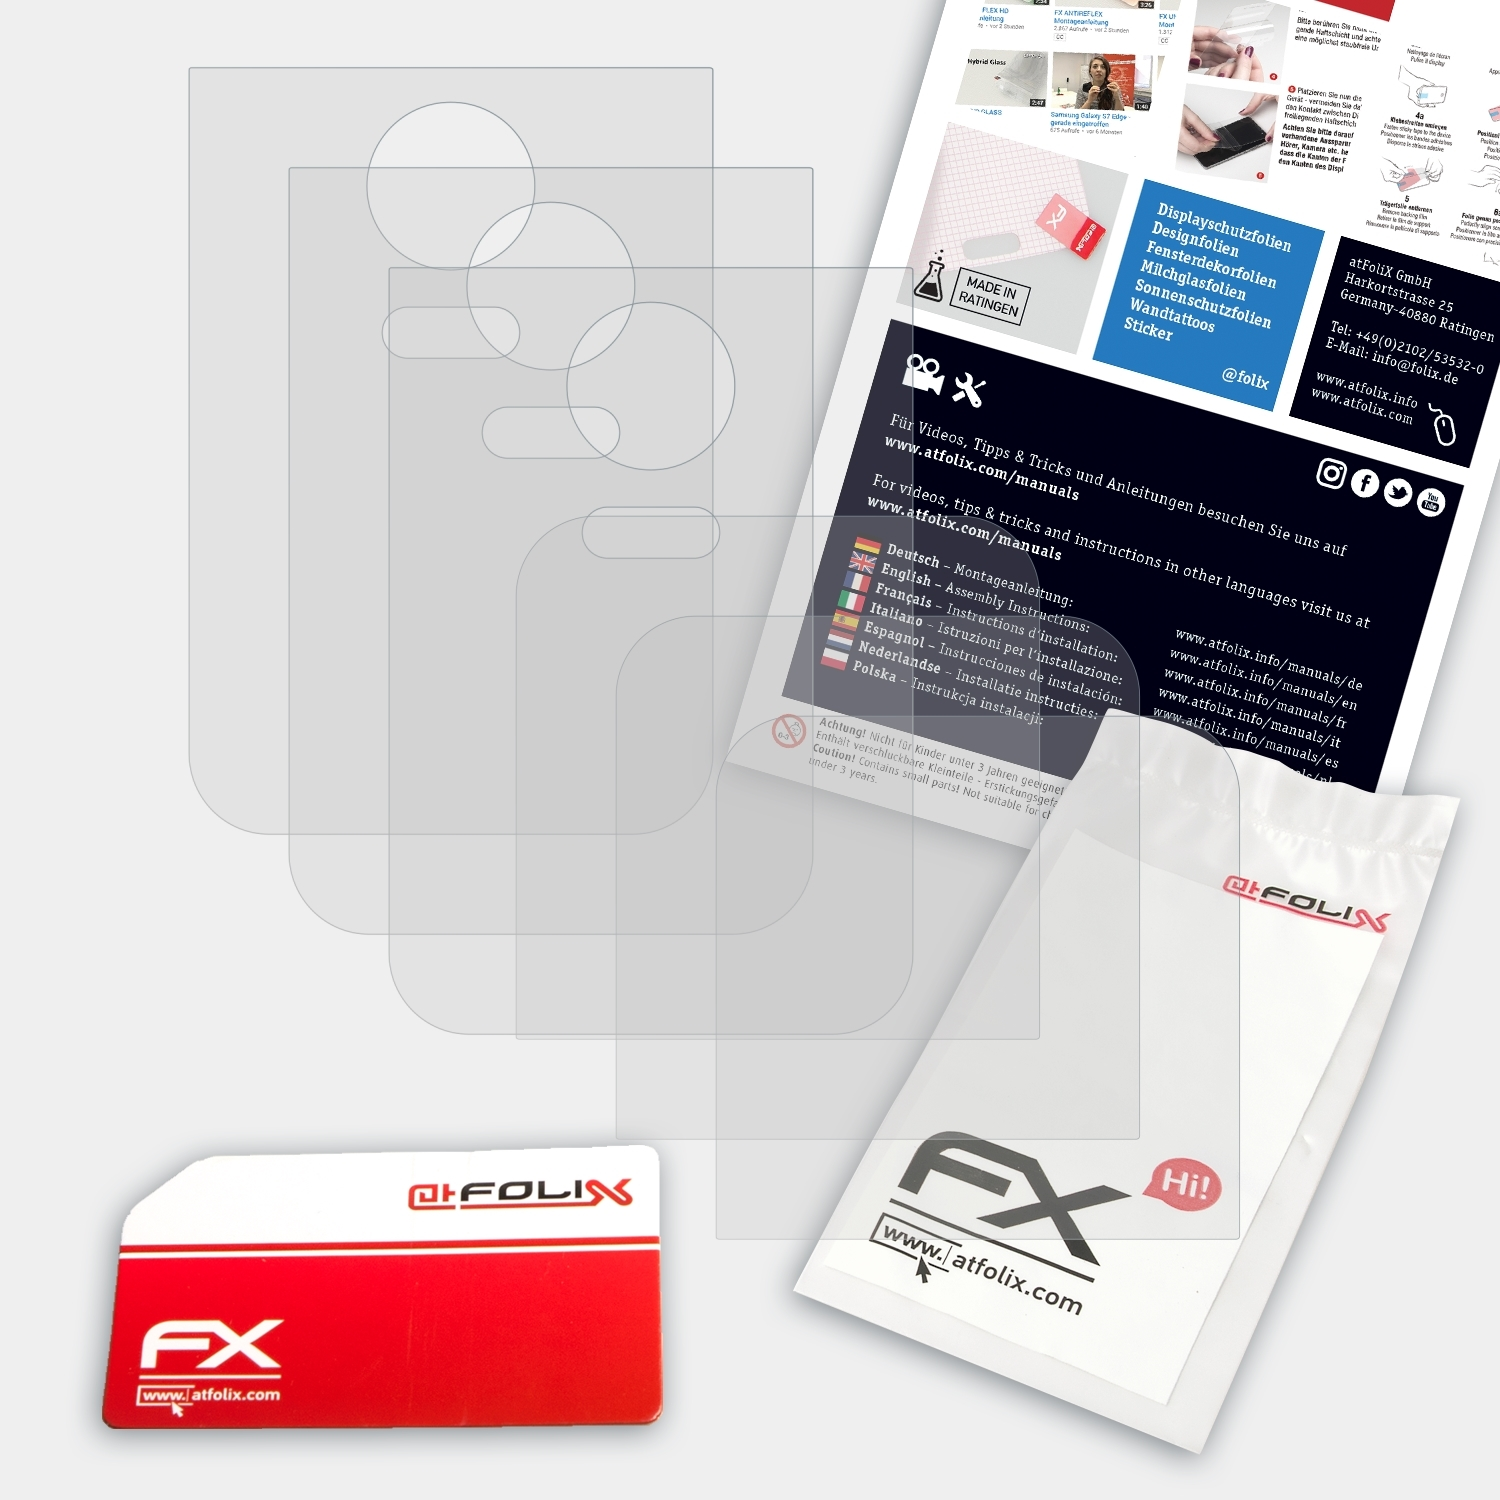 ATFOLIX 3x FX-Antireflex Displayschutz(für Kodak PLAYFULL)